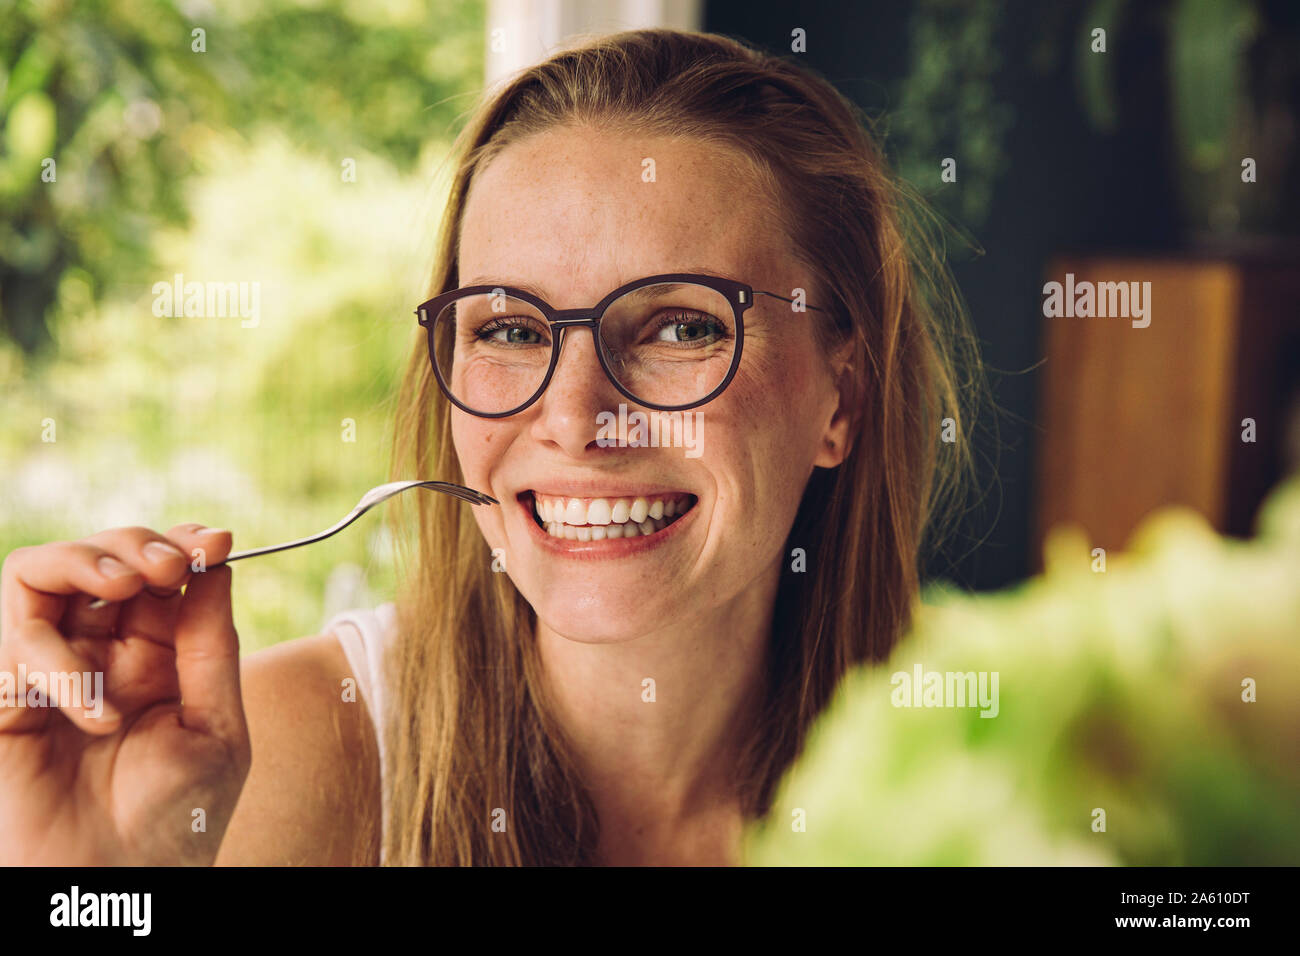 Ritratto di felice giovane donna con gli occhiali in possesso di una forcella Foto Stock